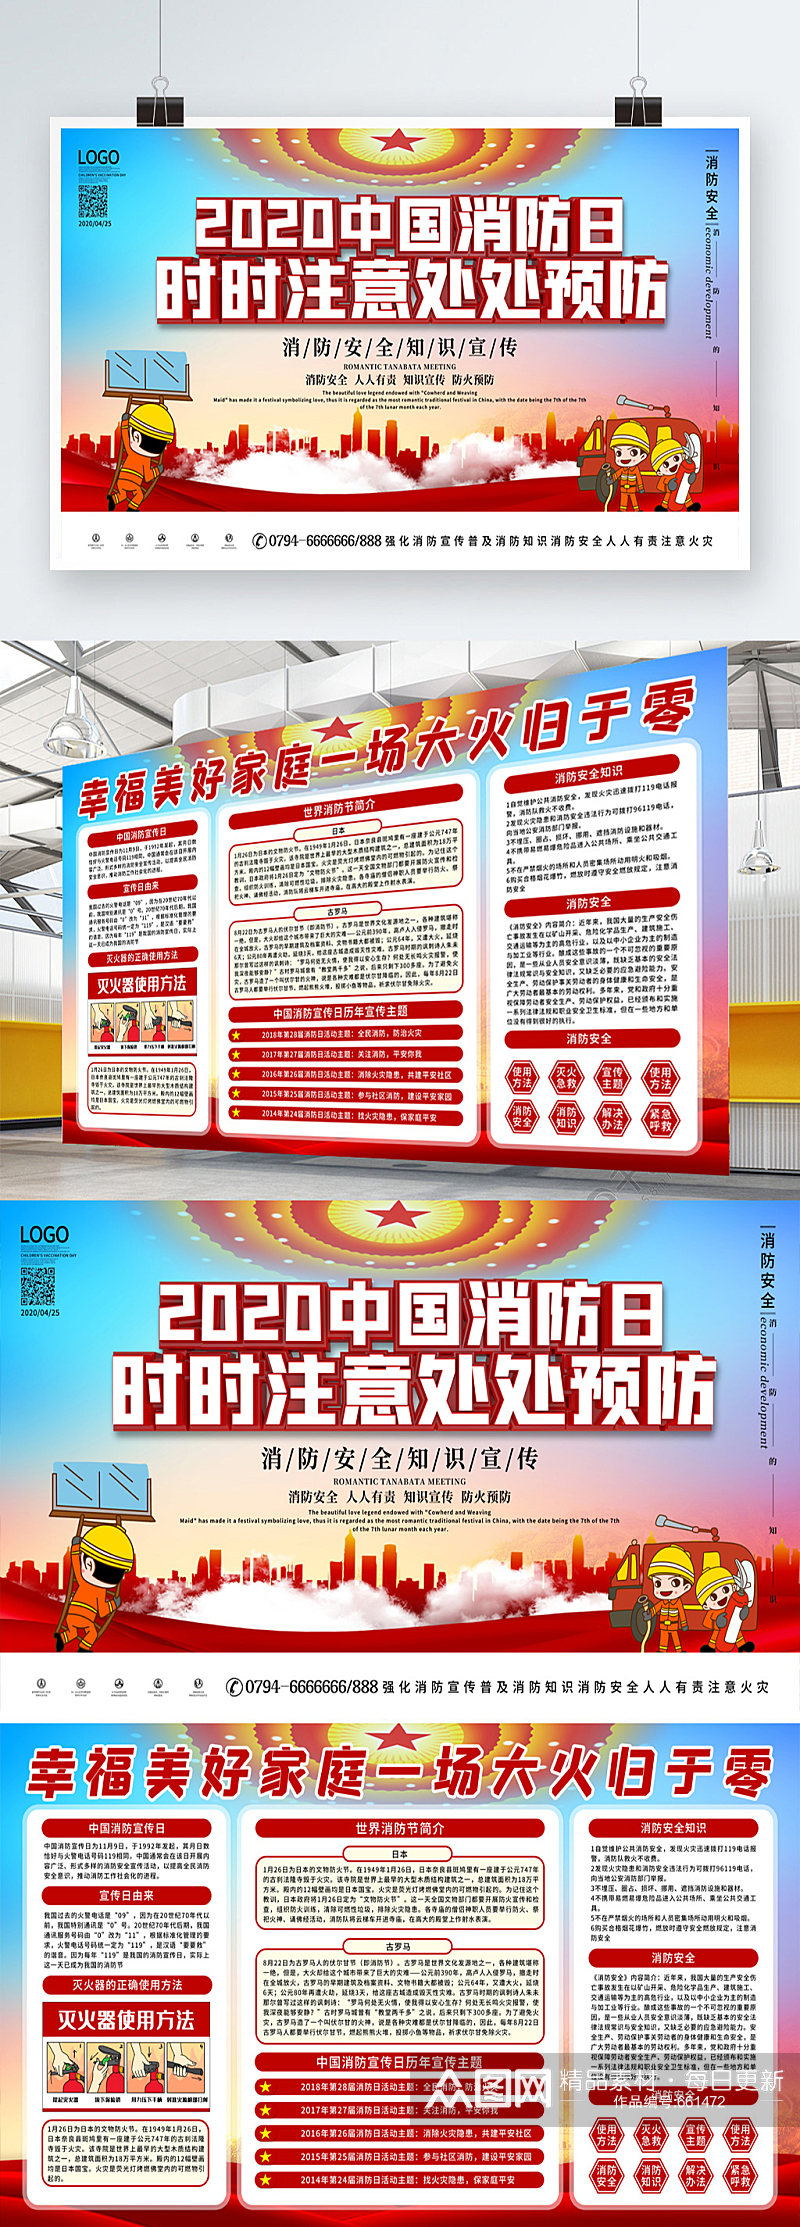 2020中国消防日火灾防范宣传展板素材